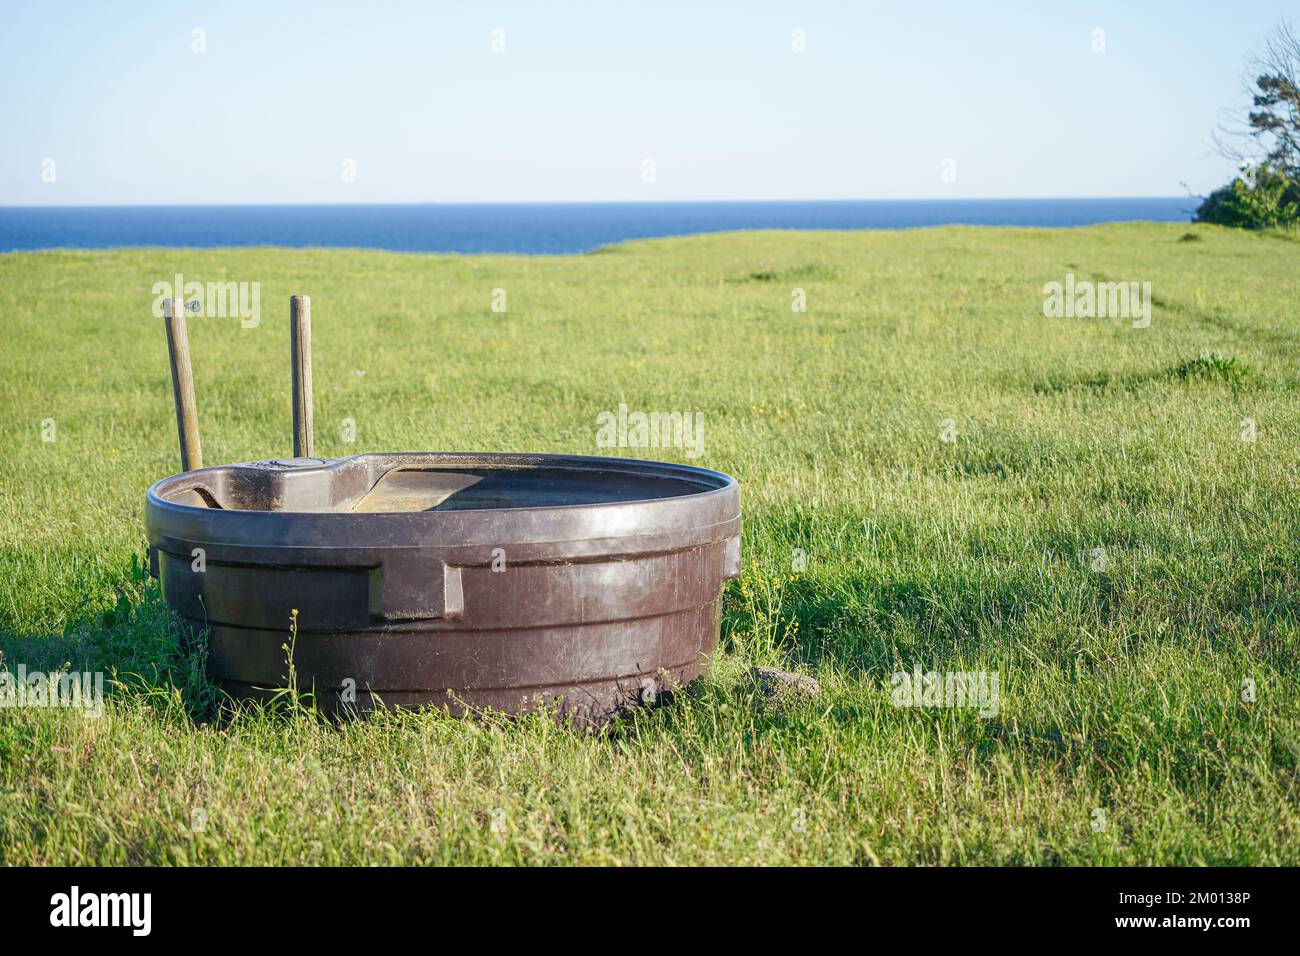 Immagine di grande vasca marrone con acqua potabile per mucche o cavalli presso la fattoria Foto Stock